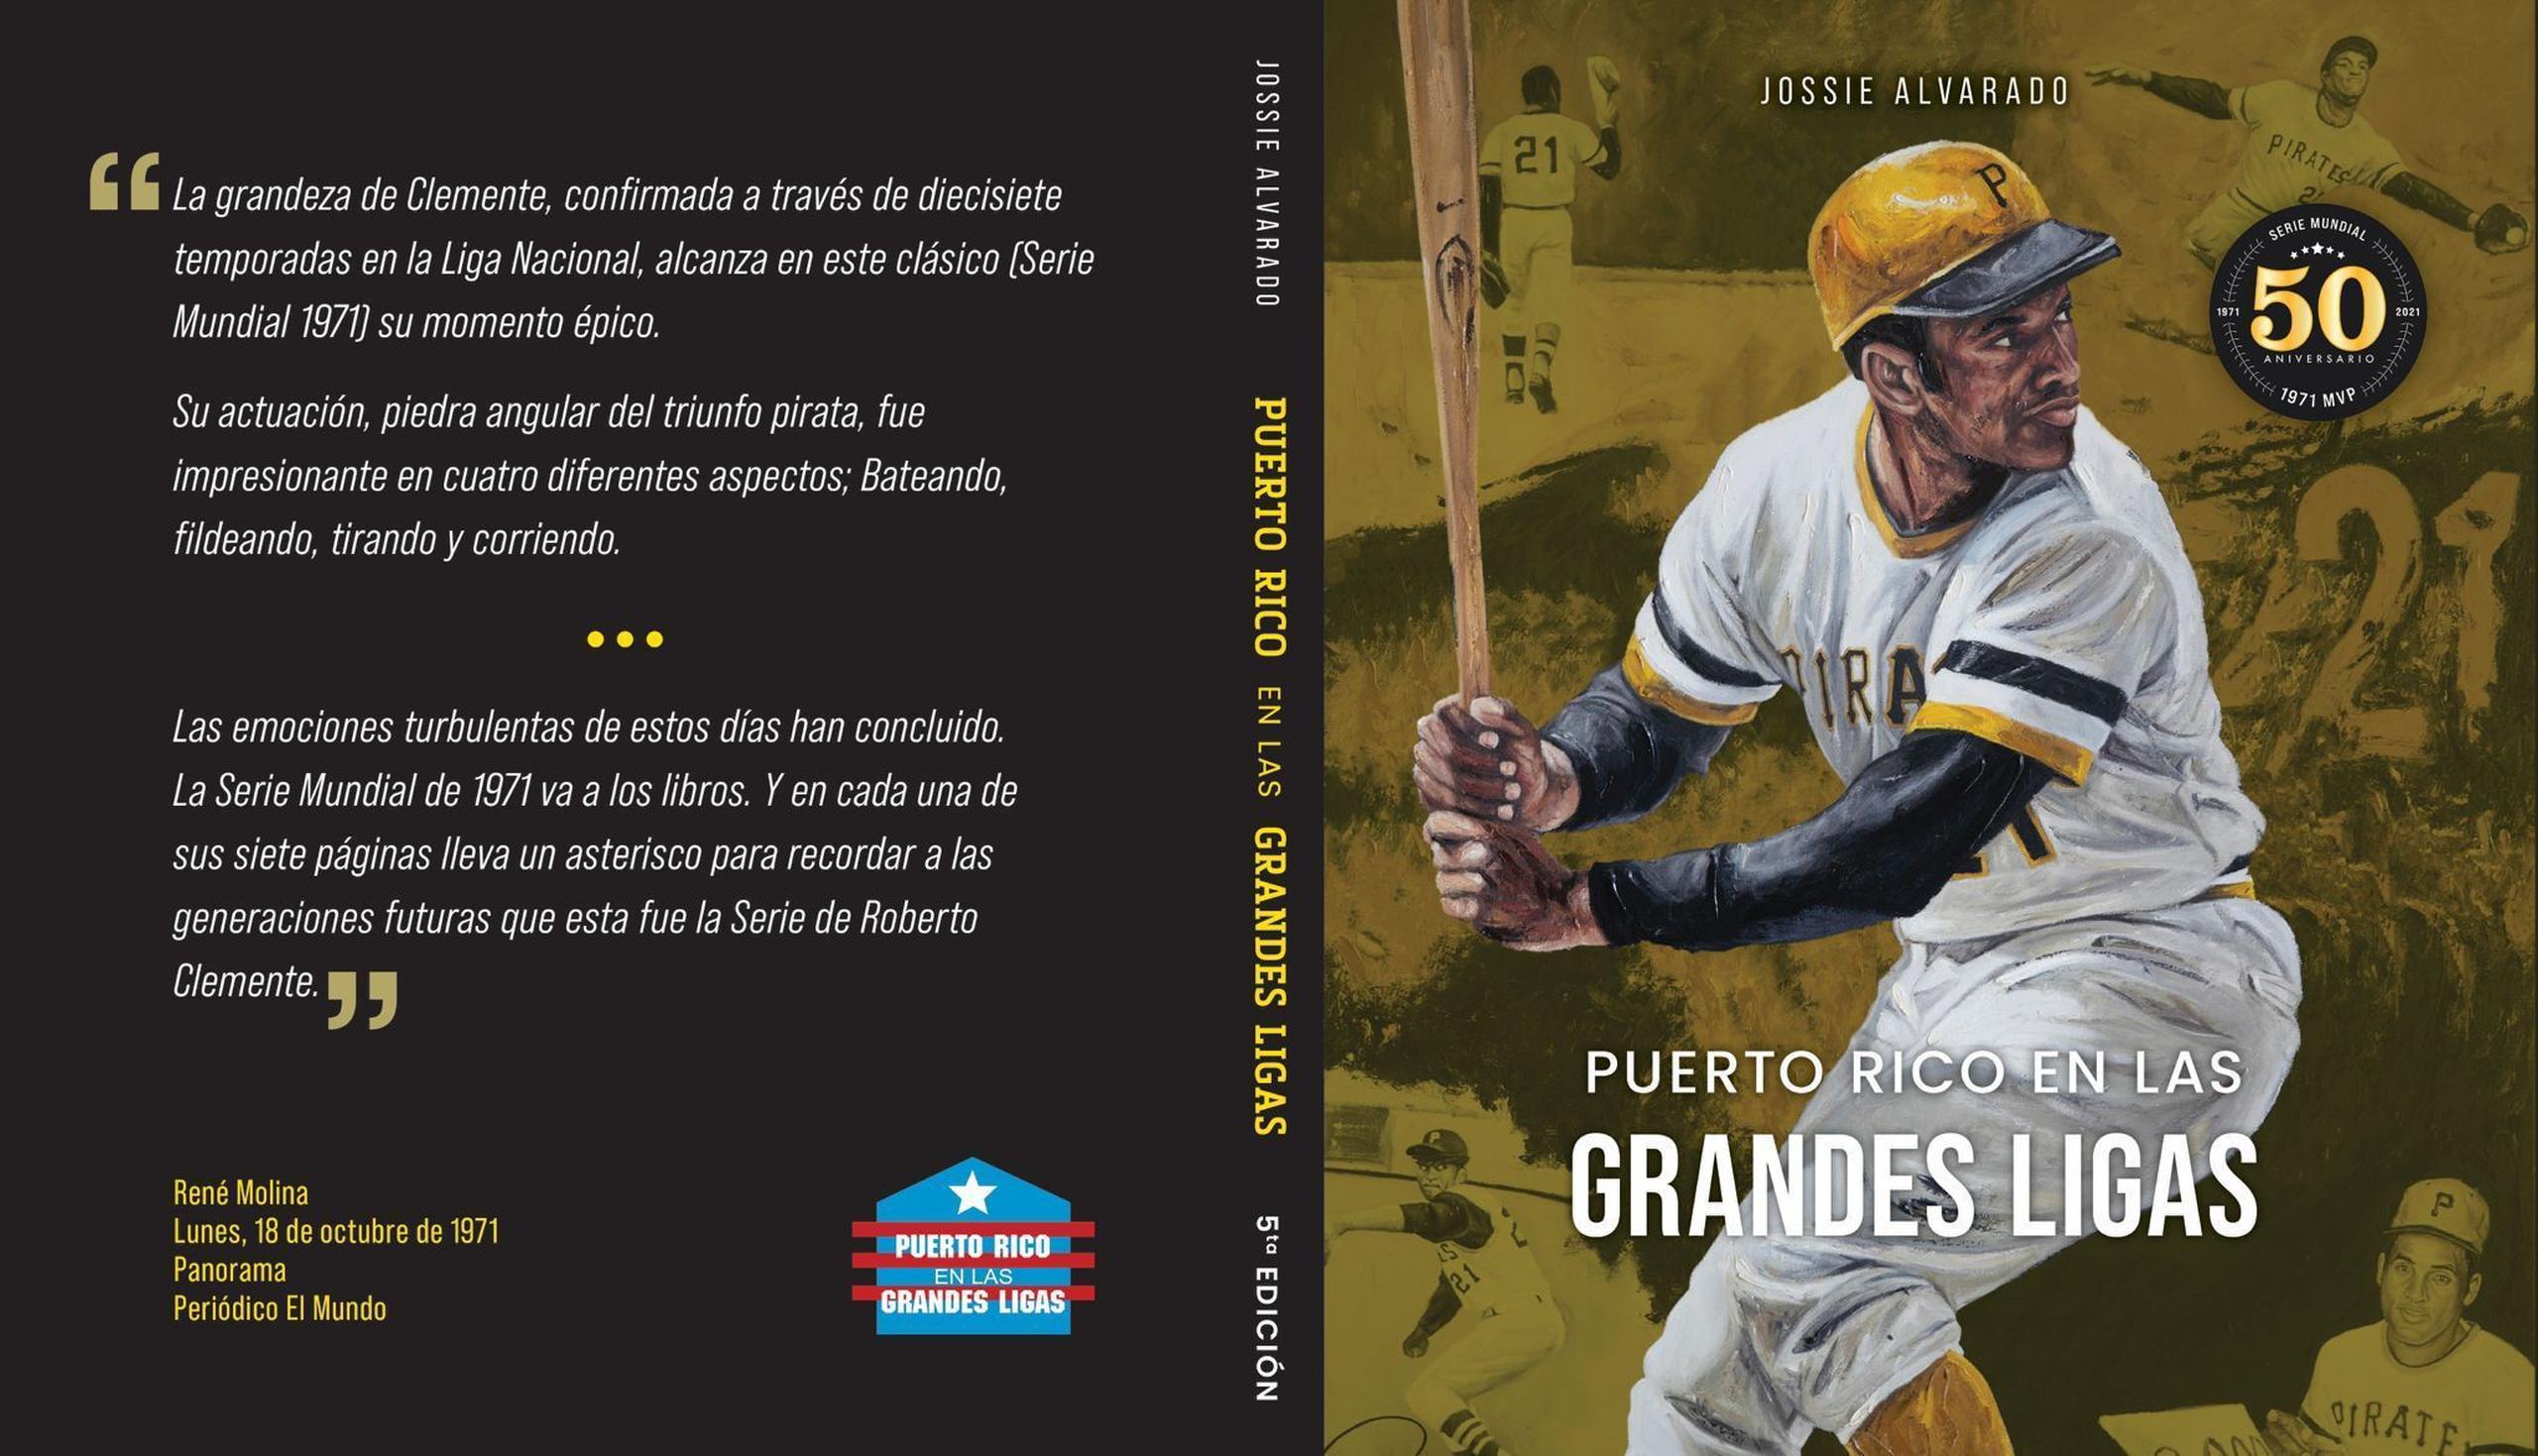 Contraportada y portada de la quinta edición del trabajo Puerto Rico en las Grandes Ligas, del historiador y escritor de béisbol salinense Jossie Alvarado.